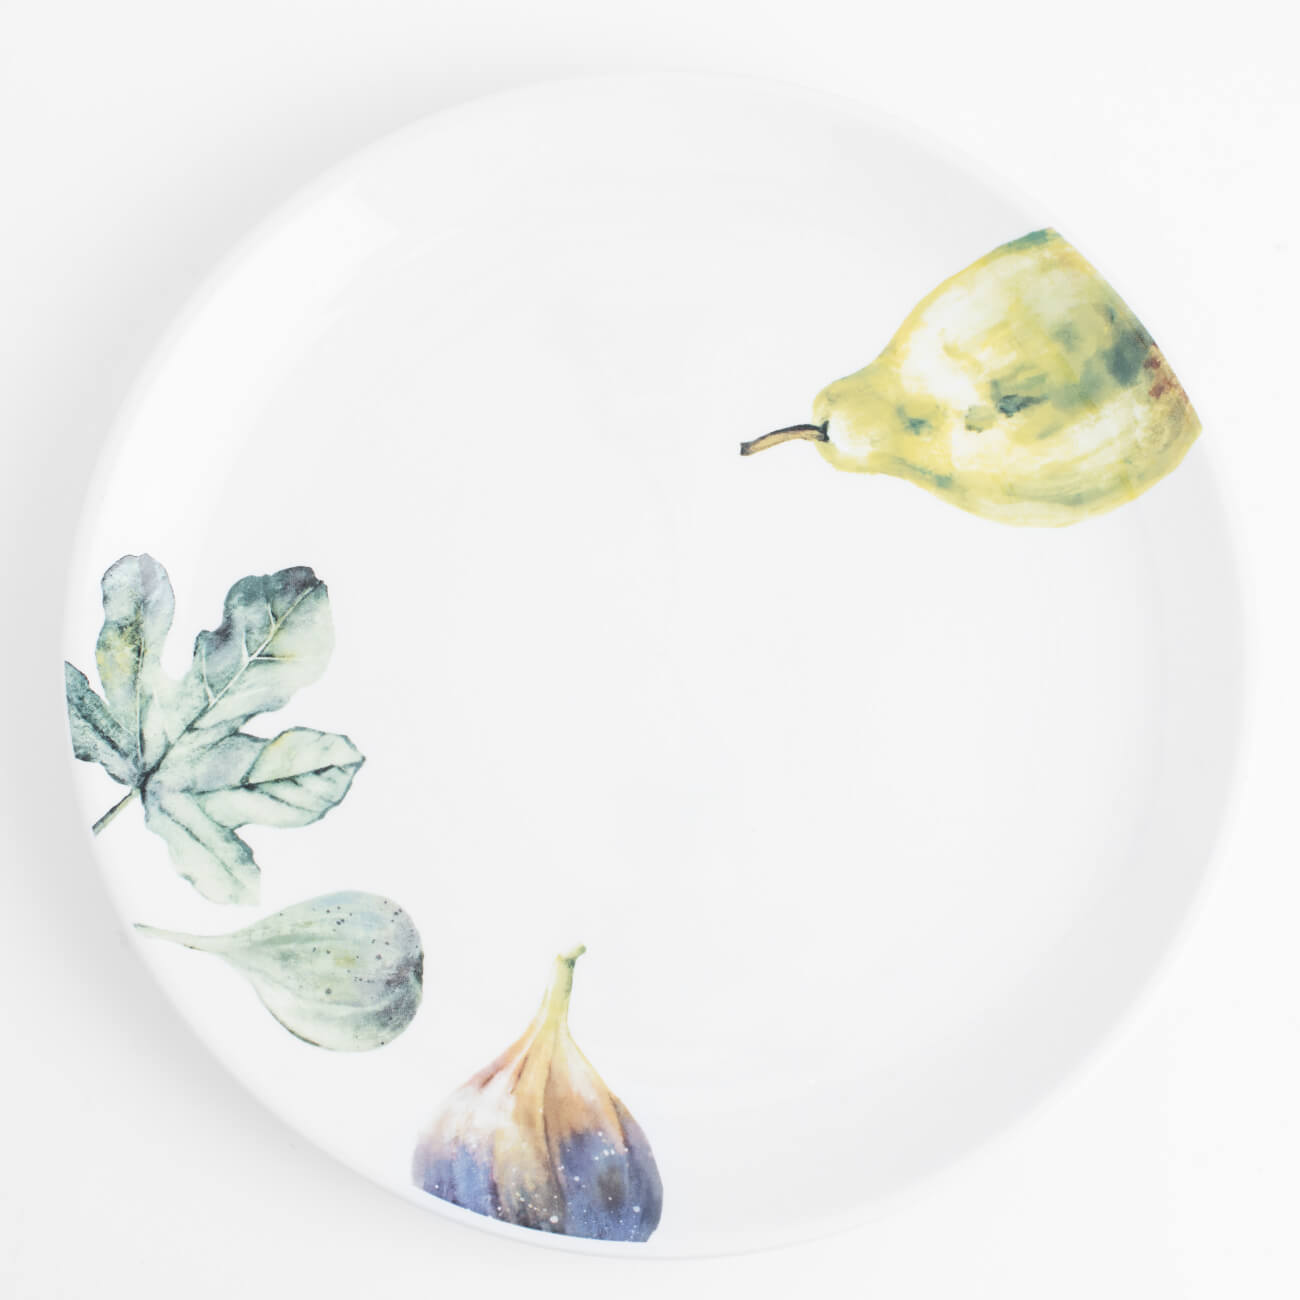 Тарелка обеденная, 26 см, керамика, белая, Инжир и груша, Fruit garden тарелка для сортировки с пинцетом